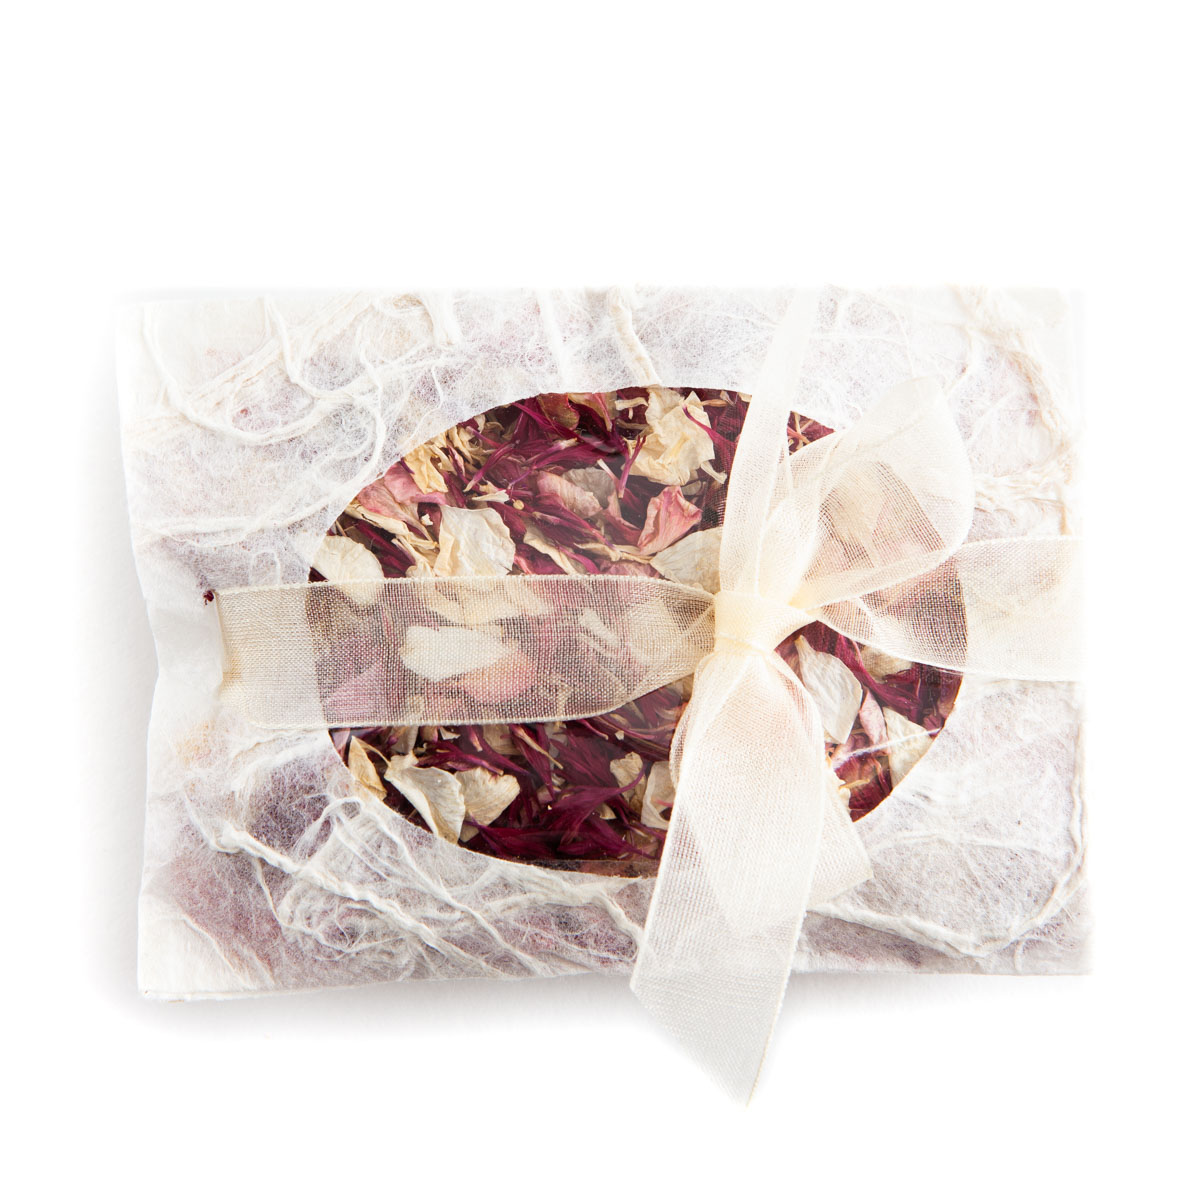 Ruby Twist confetti petals - Biodegradable Confetti - Real Flower Petal Confetti - Envelope